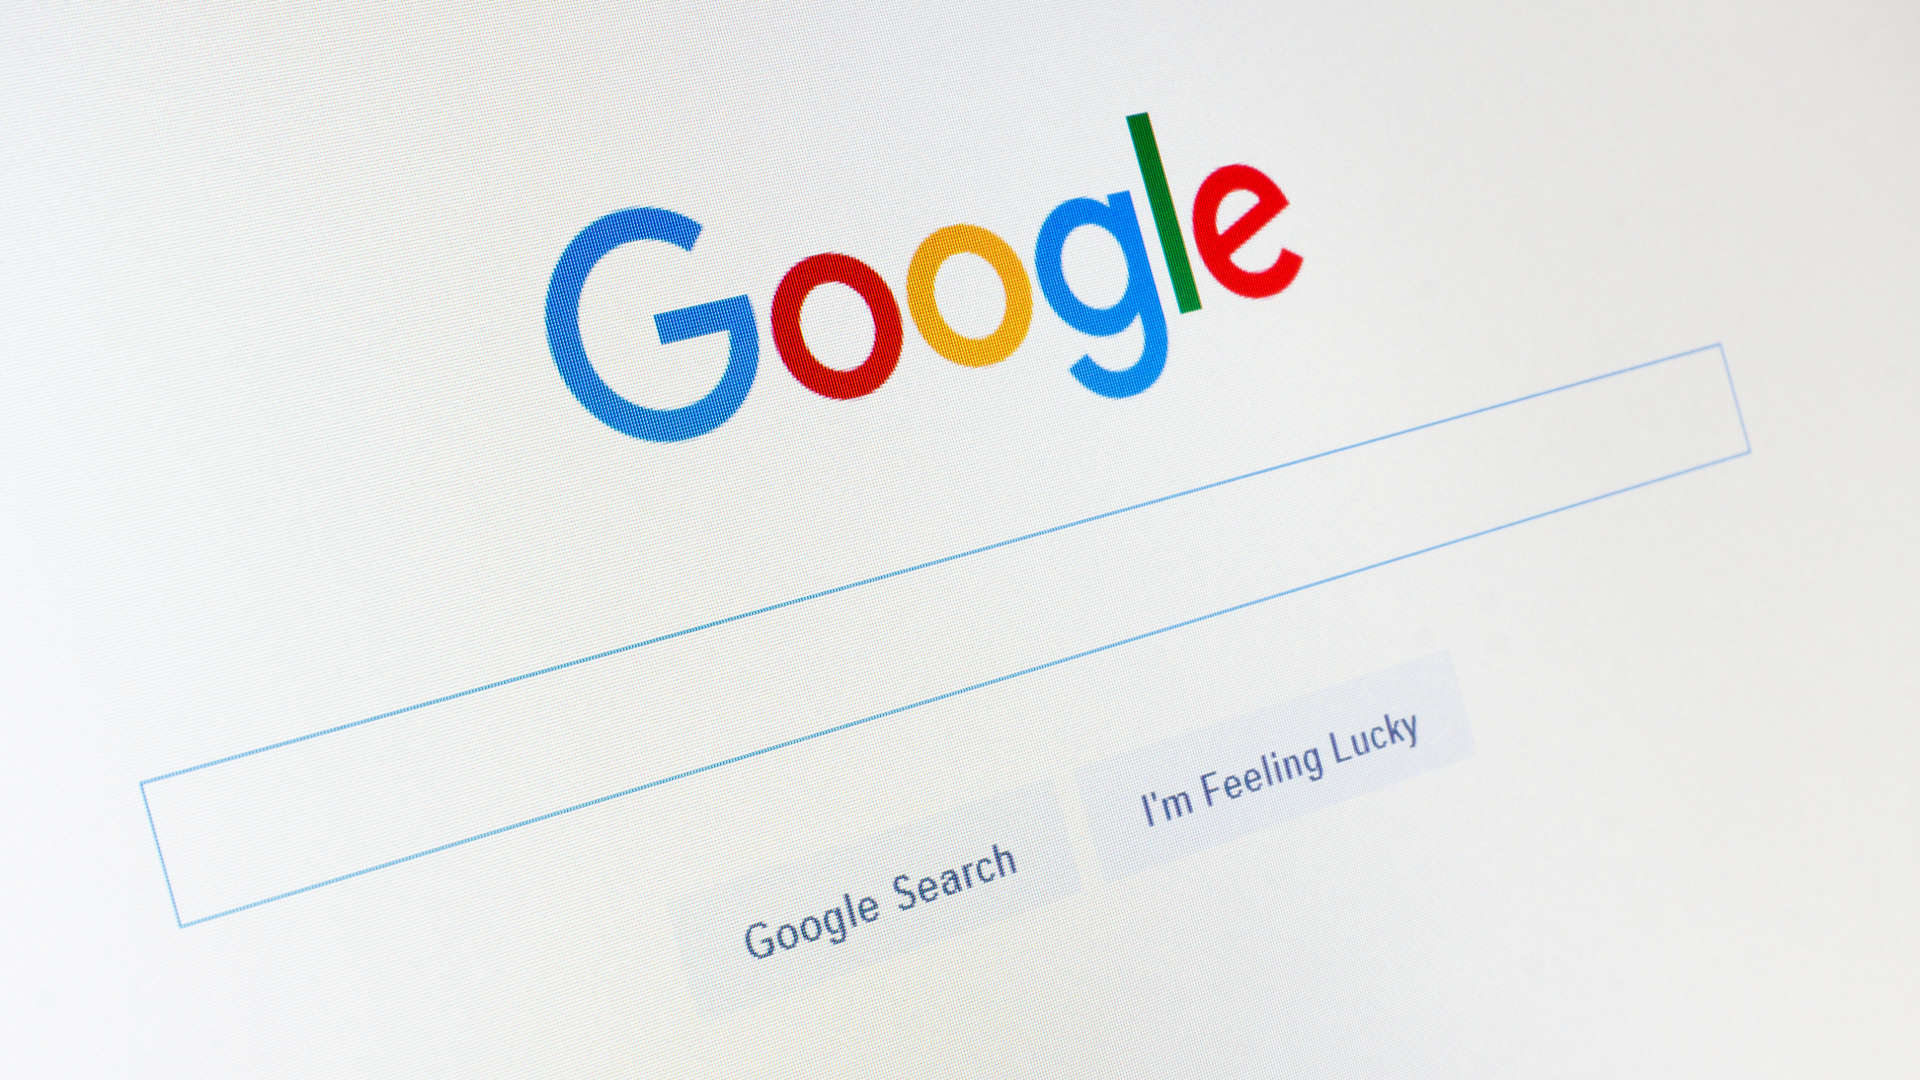 Οι τοπ αναζητήσεις στο Google για το 2018